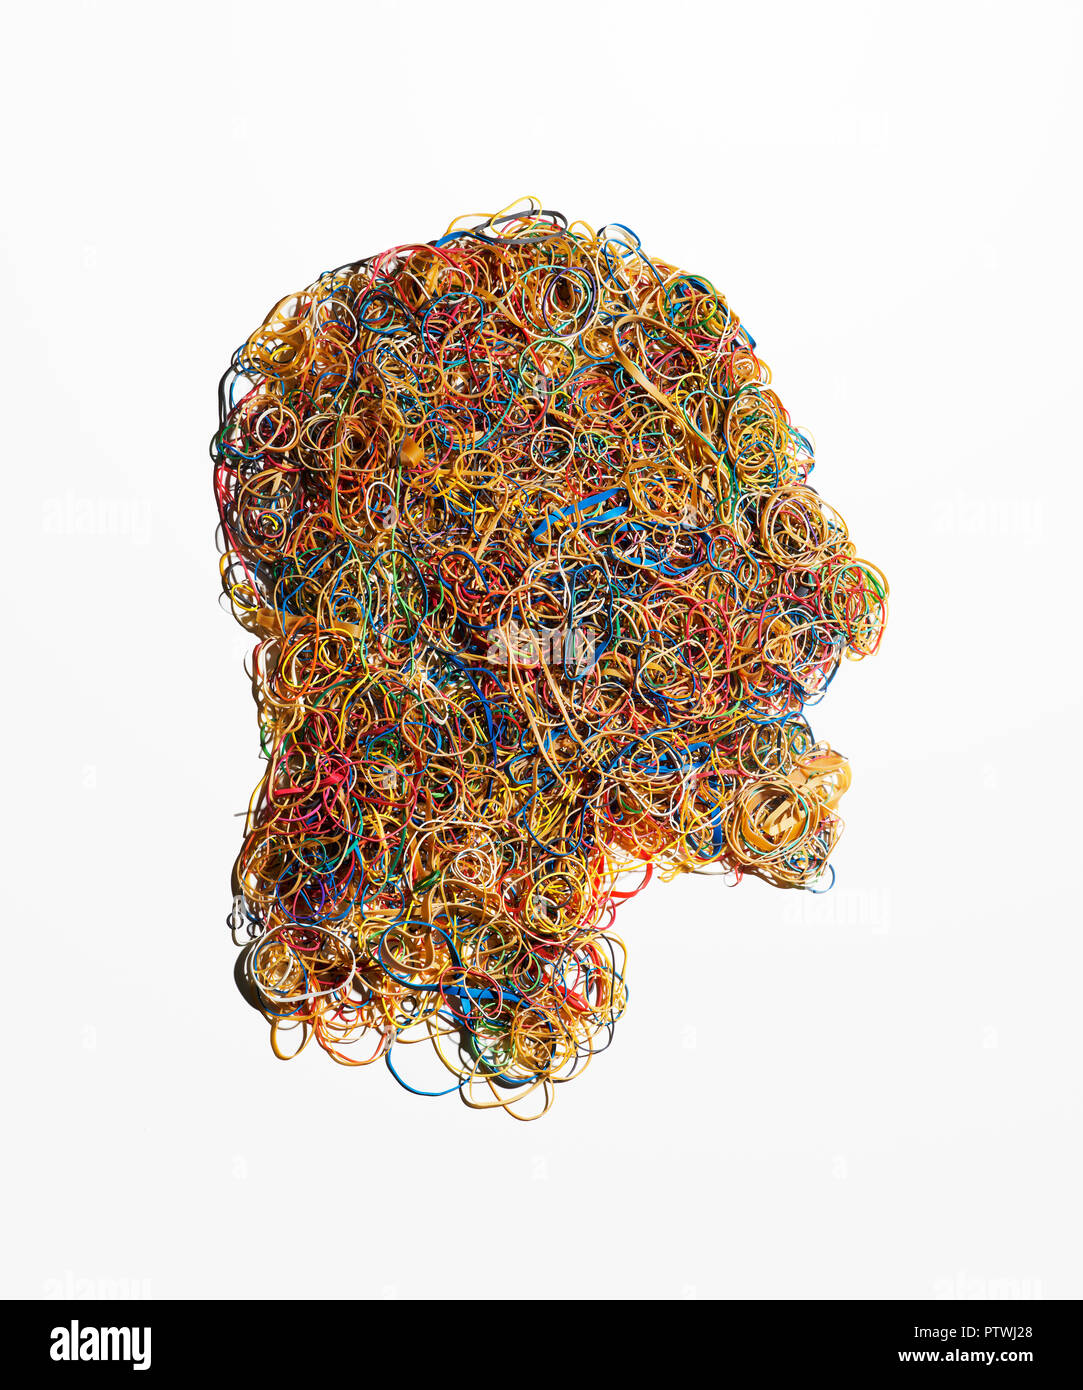 Forme de tête humaine fabriqués à partir de bandes en caoutchouc élastique Banque D'Images